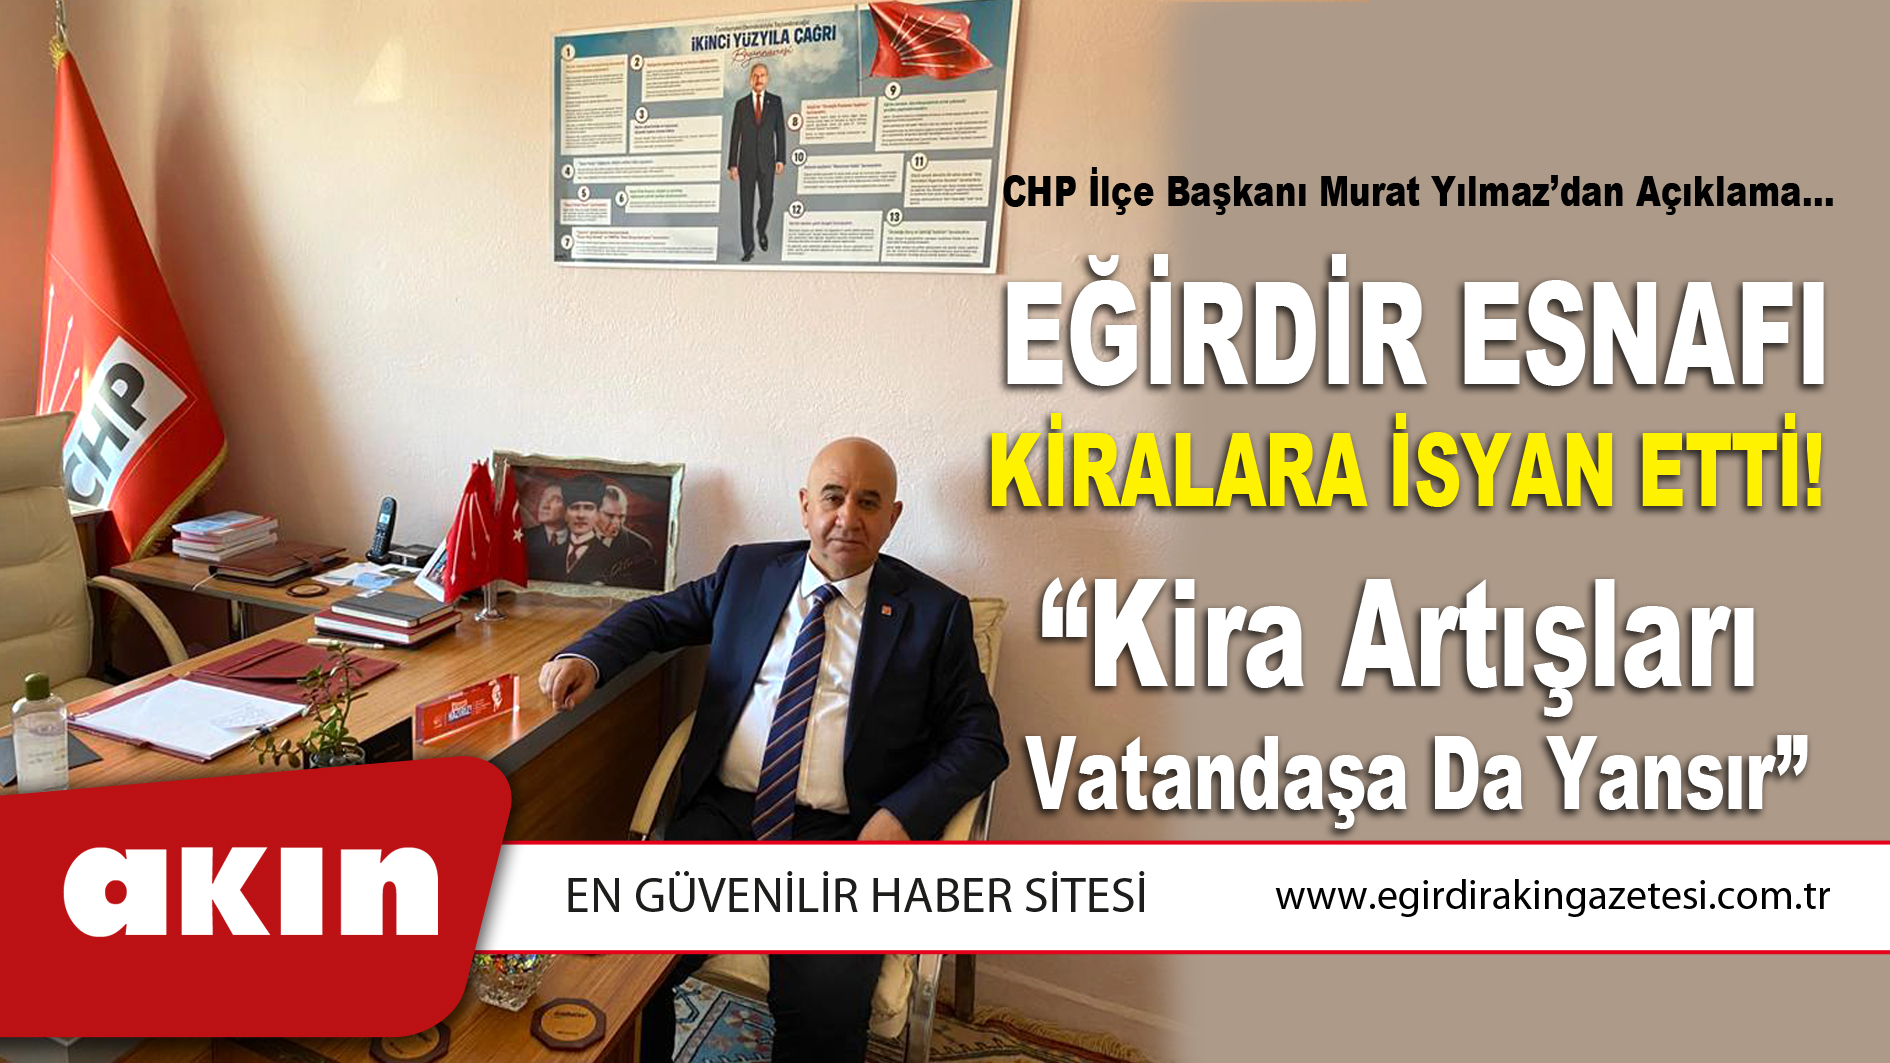 CHP İlçe Başkanı Murat Yılmaz’dan Açıklama...